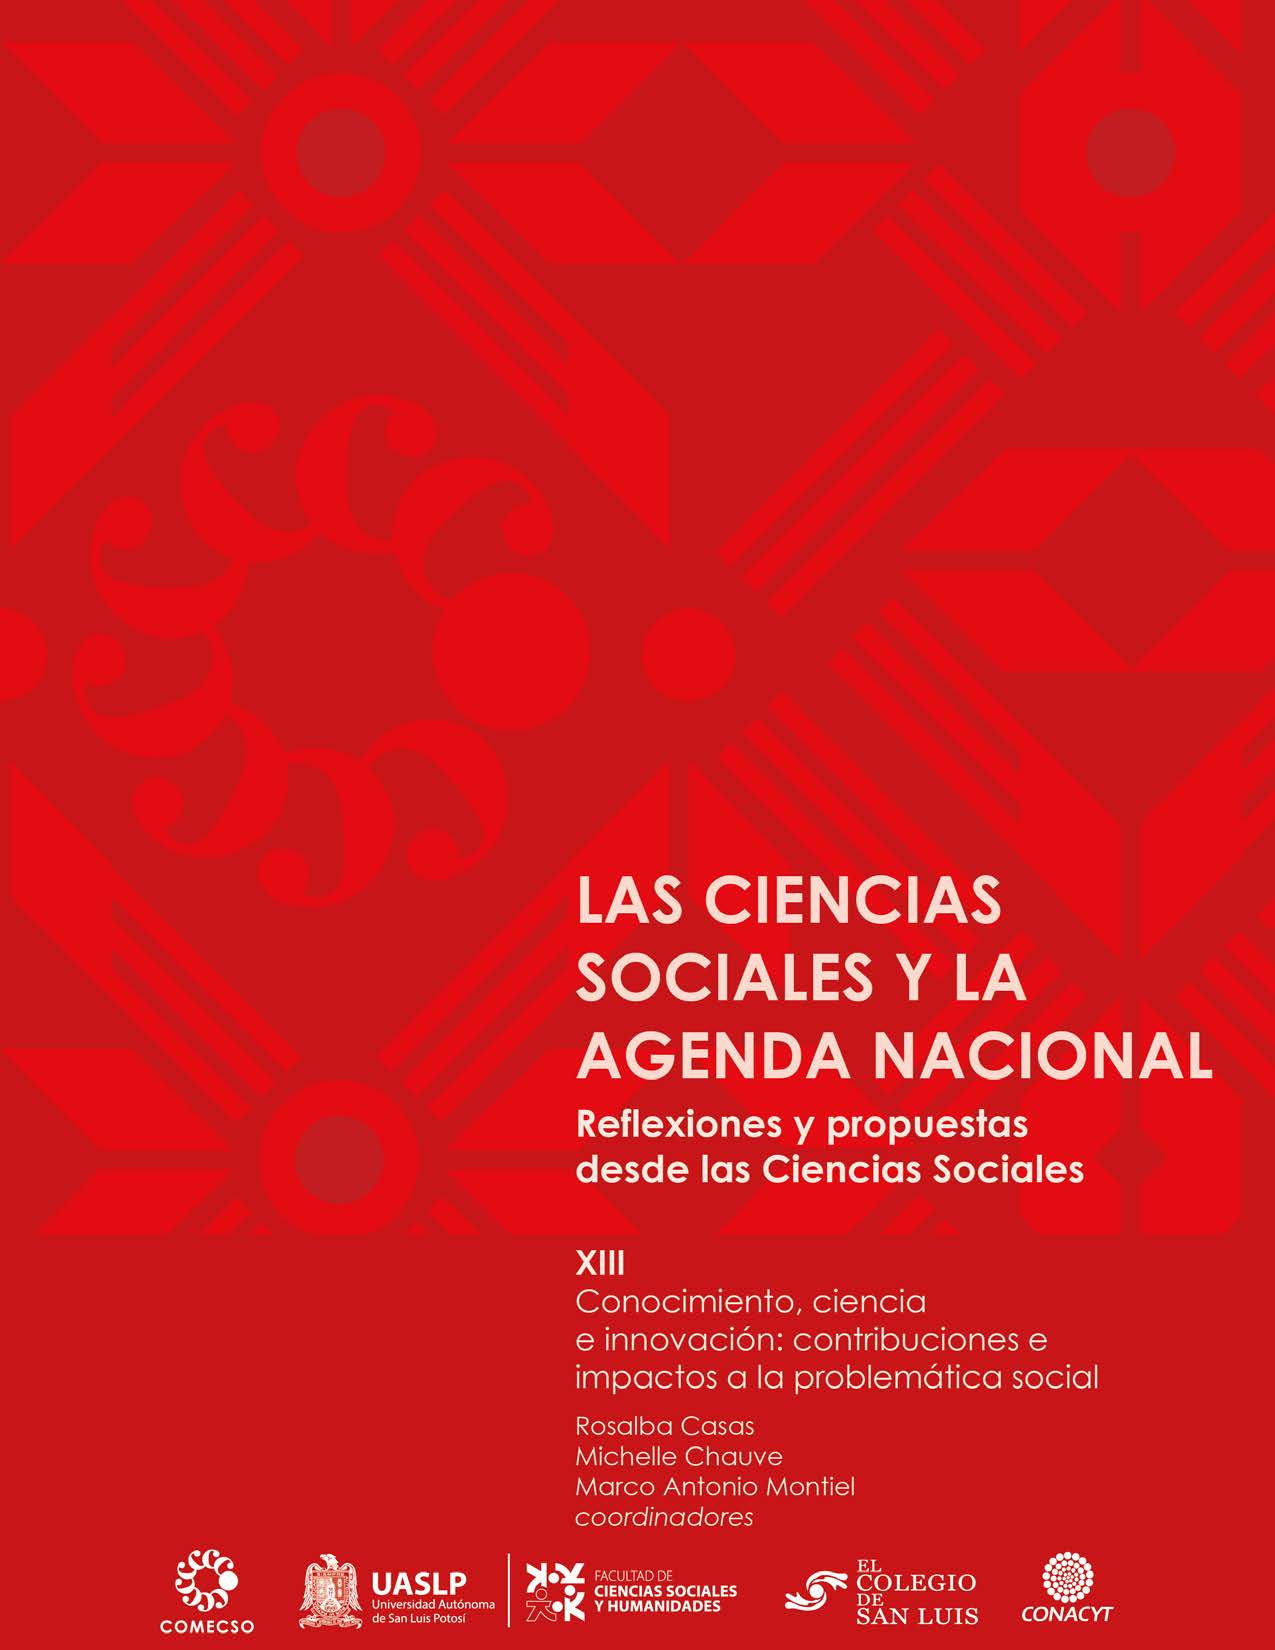 Vol. XIII. Conocimiento, ciencia e innovación: contribuciones e impactos a la problemática social